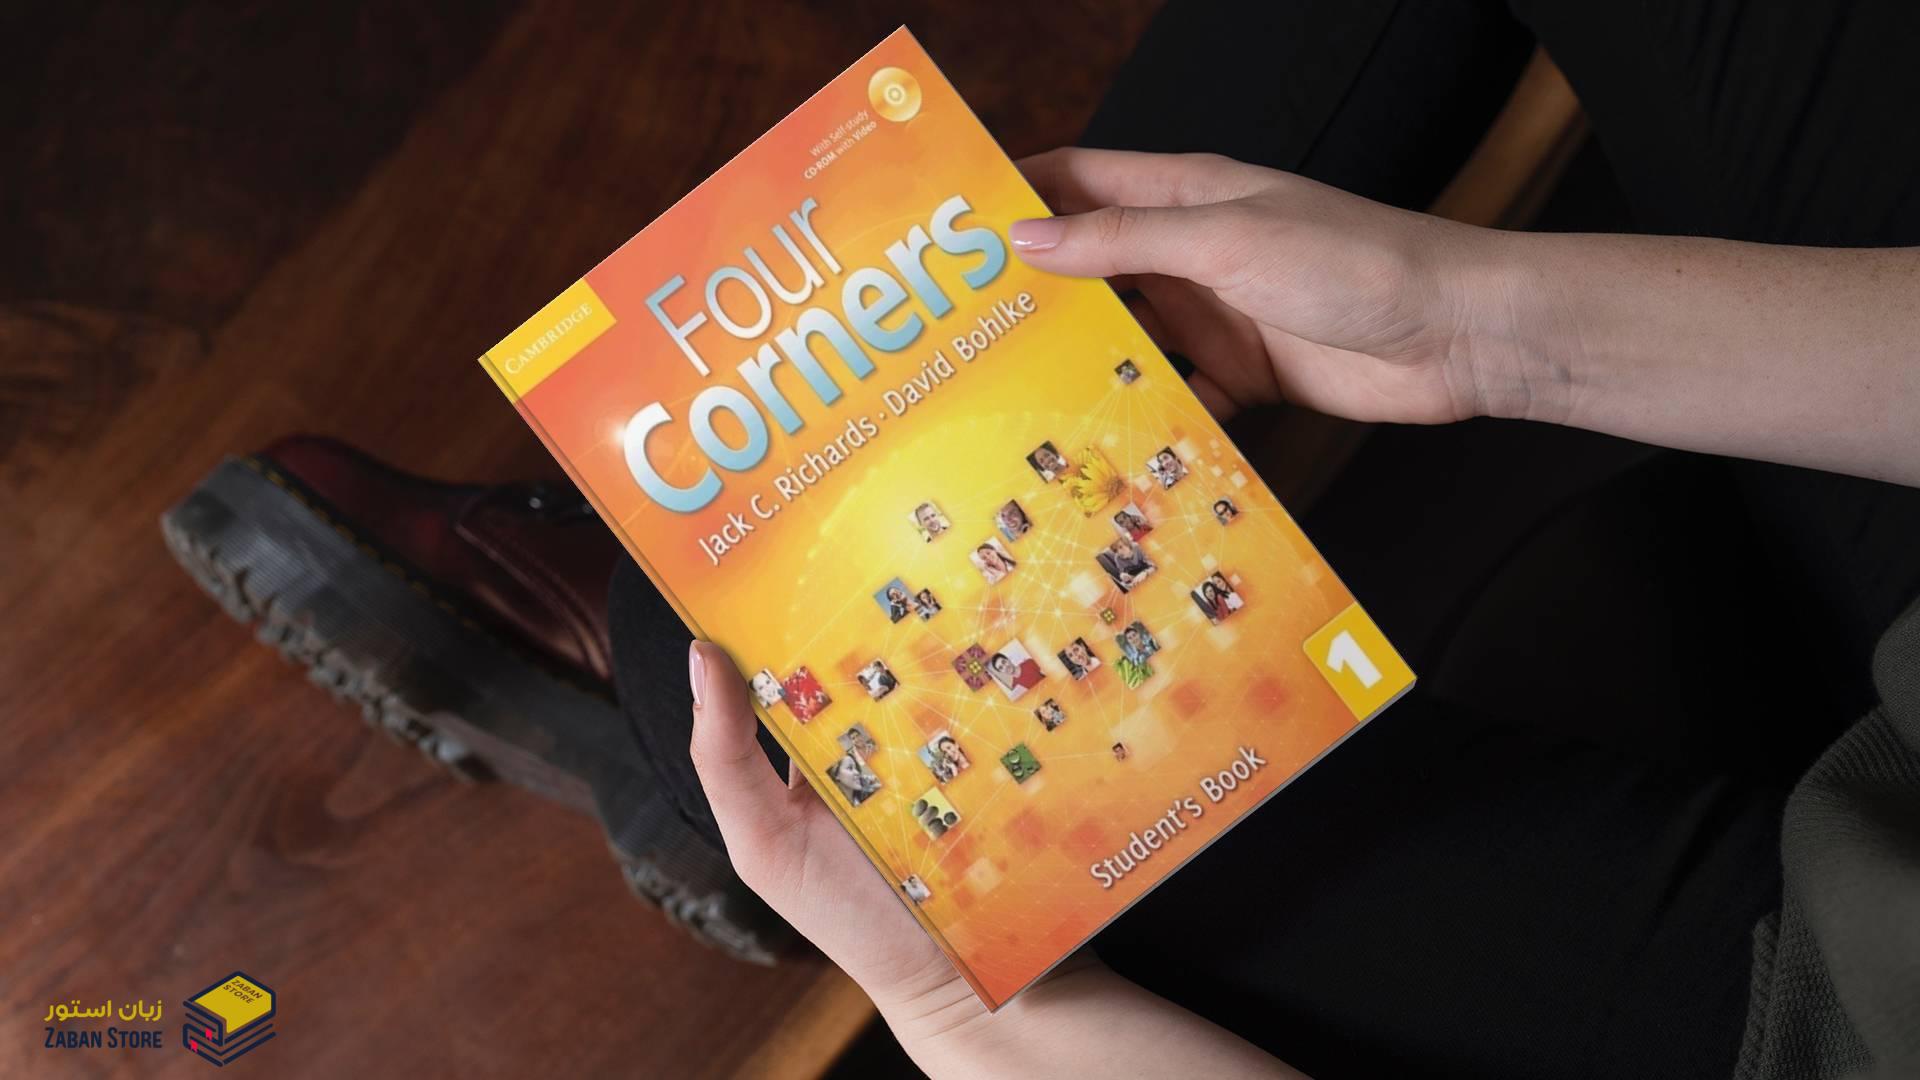 خرید کتاب زبان | کتاب زبان اصلی | Four Corners 1 | کتاب فور کورنرز یک